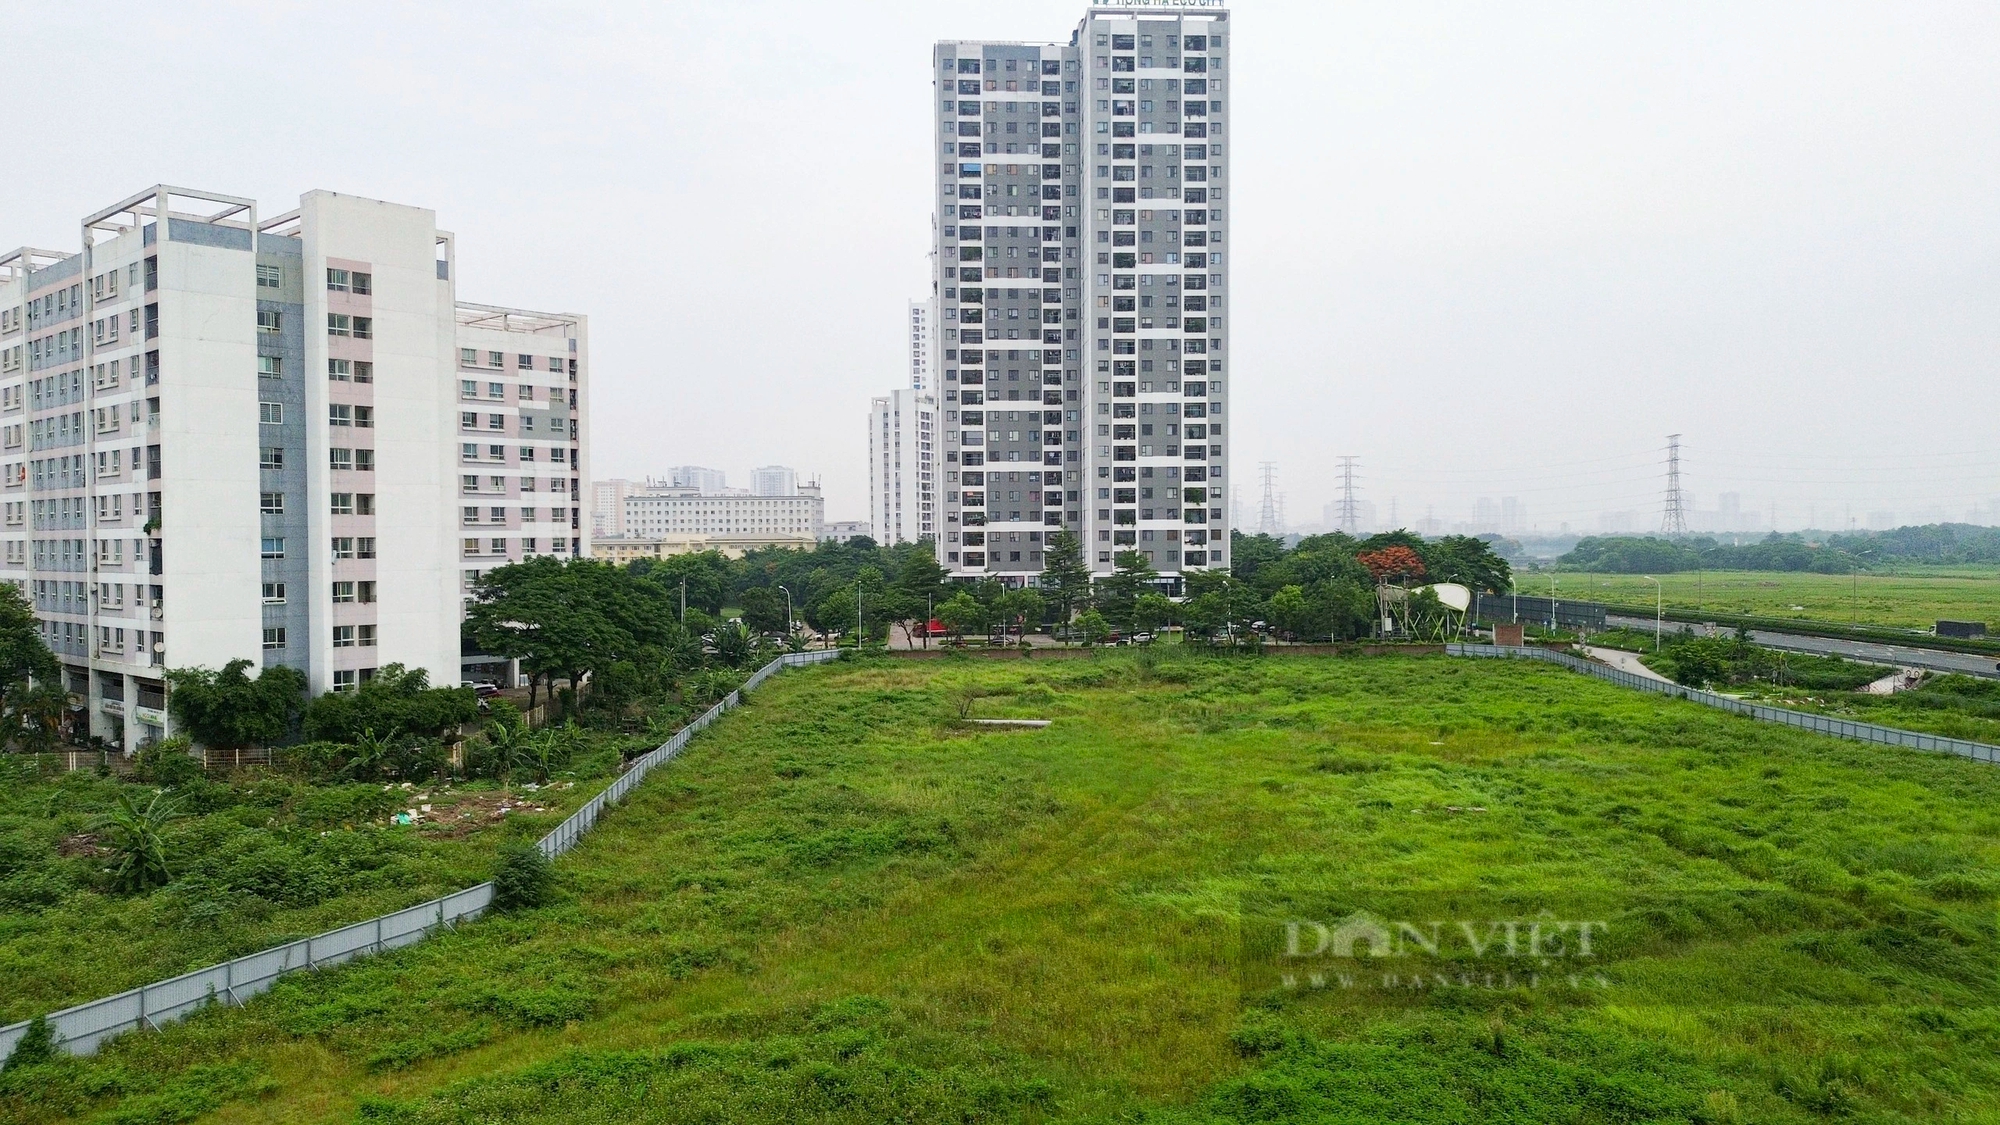 Sau gần 2 thập kỷ, cỏ vẫn mọc xanh tốt tại vị trí xây bệnh viện tiêu chuẩn quốc tế 5 sao ở Hà Nội- Ảnh 9.